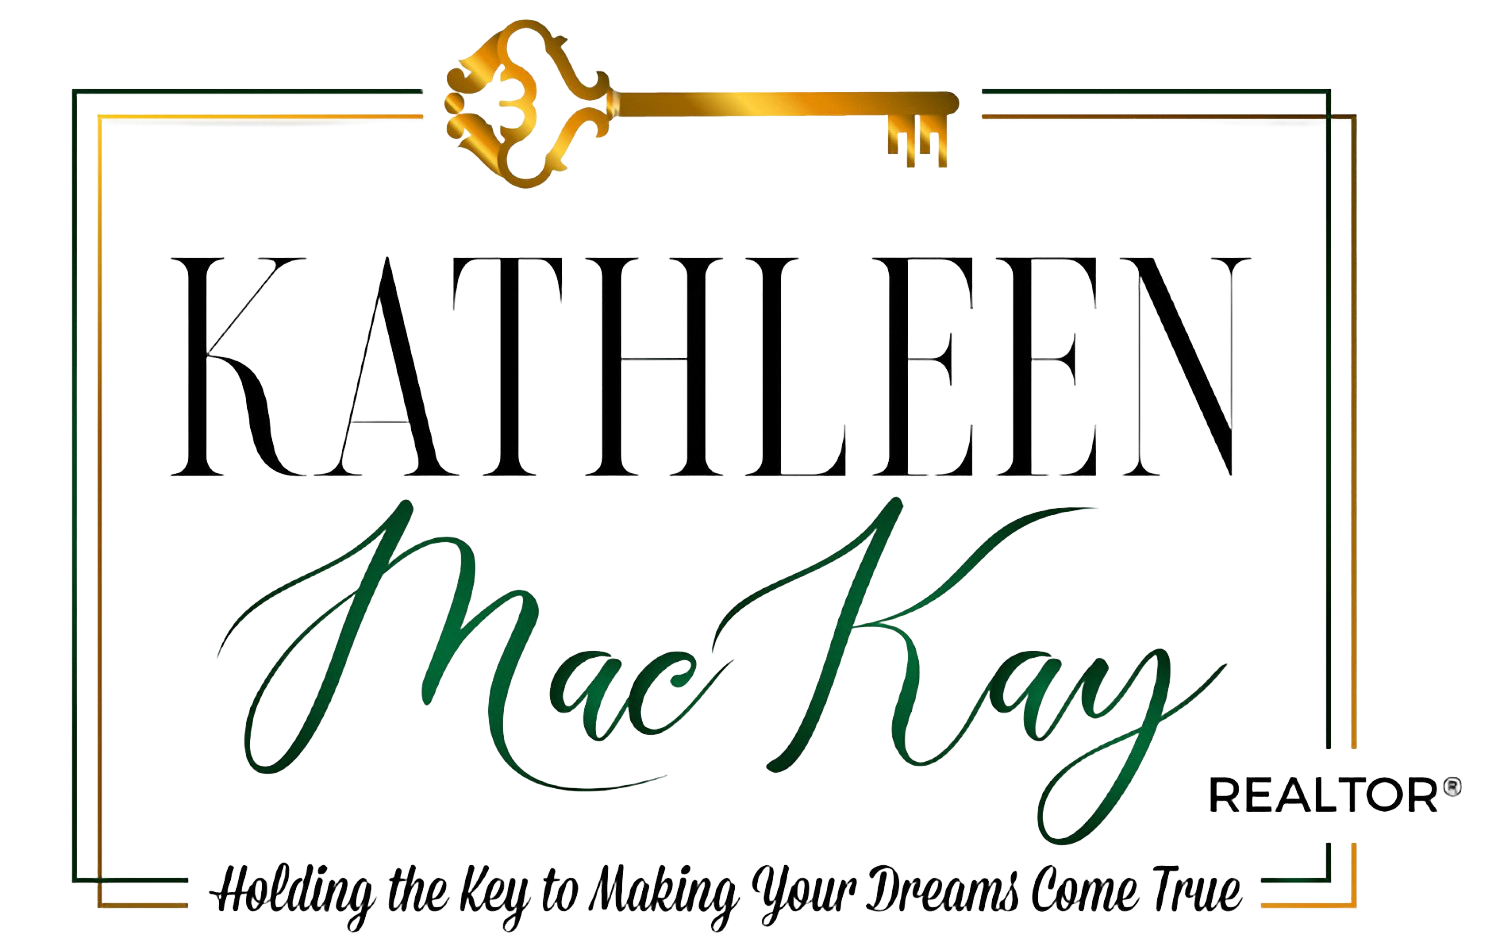 Kathy MacKay Realtor logo